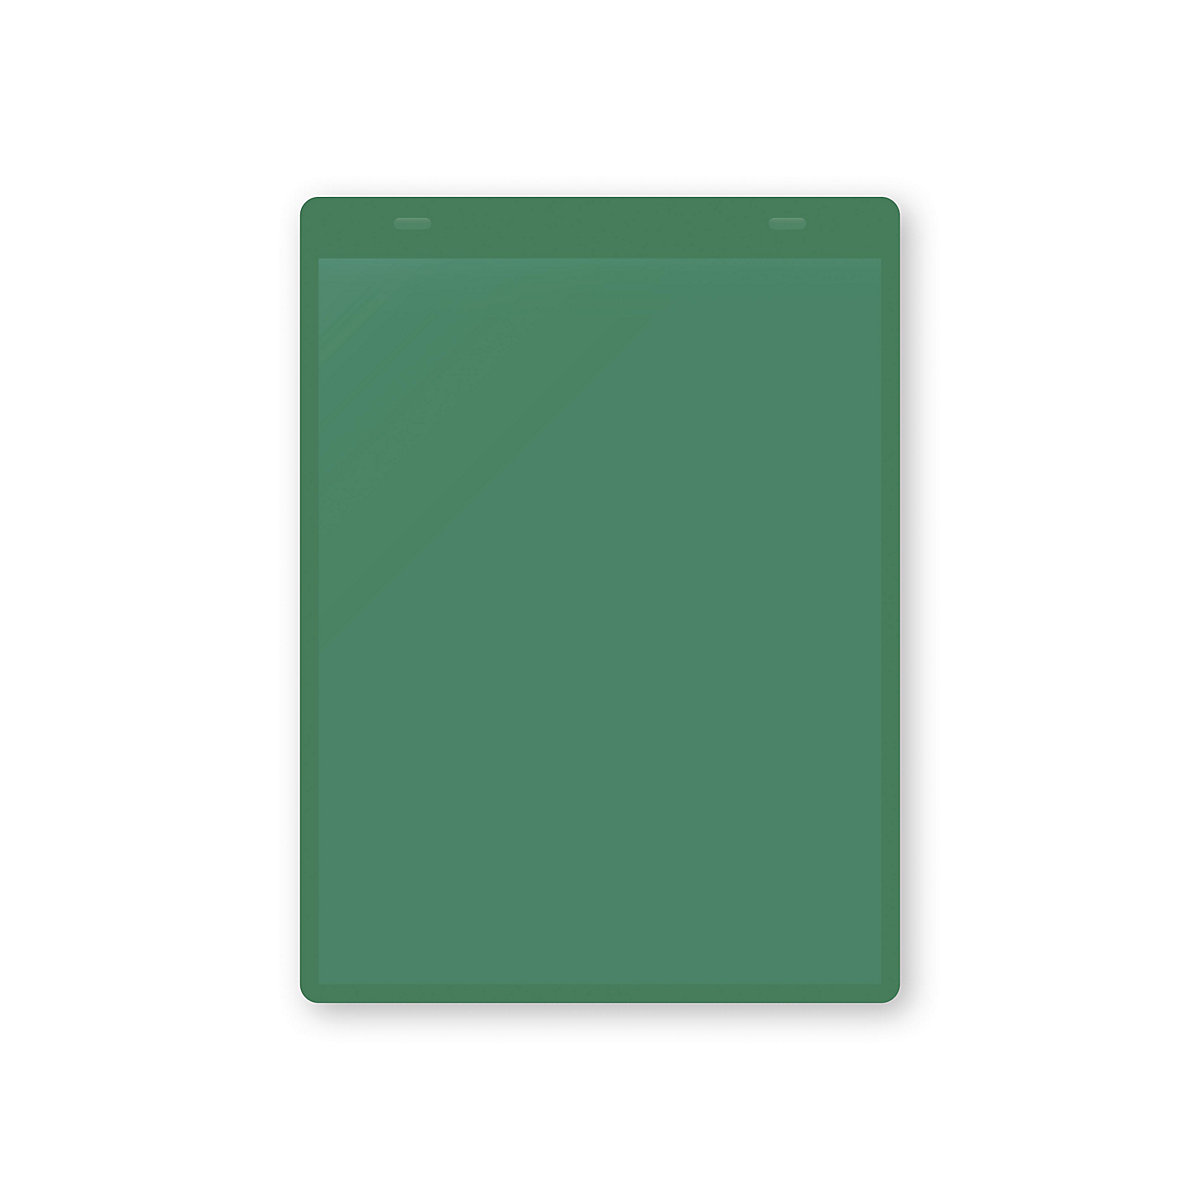 Öntapadó dokumentumtartó tasakok, DIN A5, álló, cs. e. 10 db, zöld